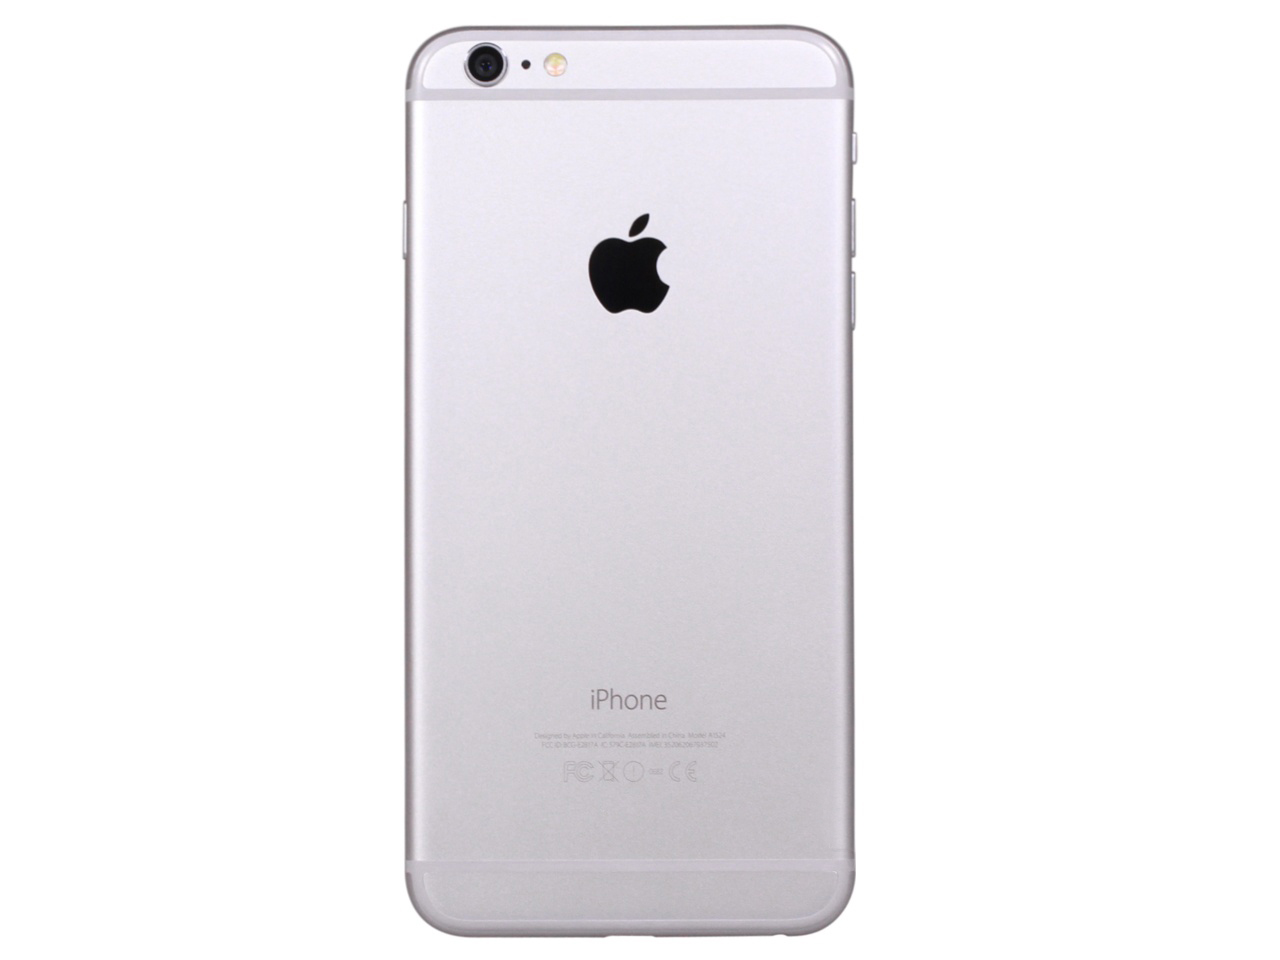 【图】苹果iPhone6 Plus 16GB图片( Apple iPhone6 Plus 图片)__标准外观图_第4页_太平洋产品报价